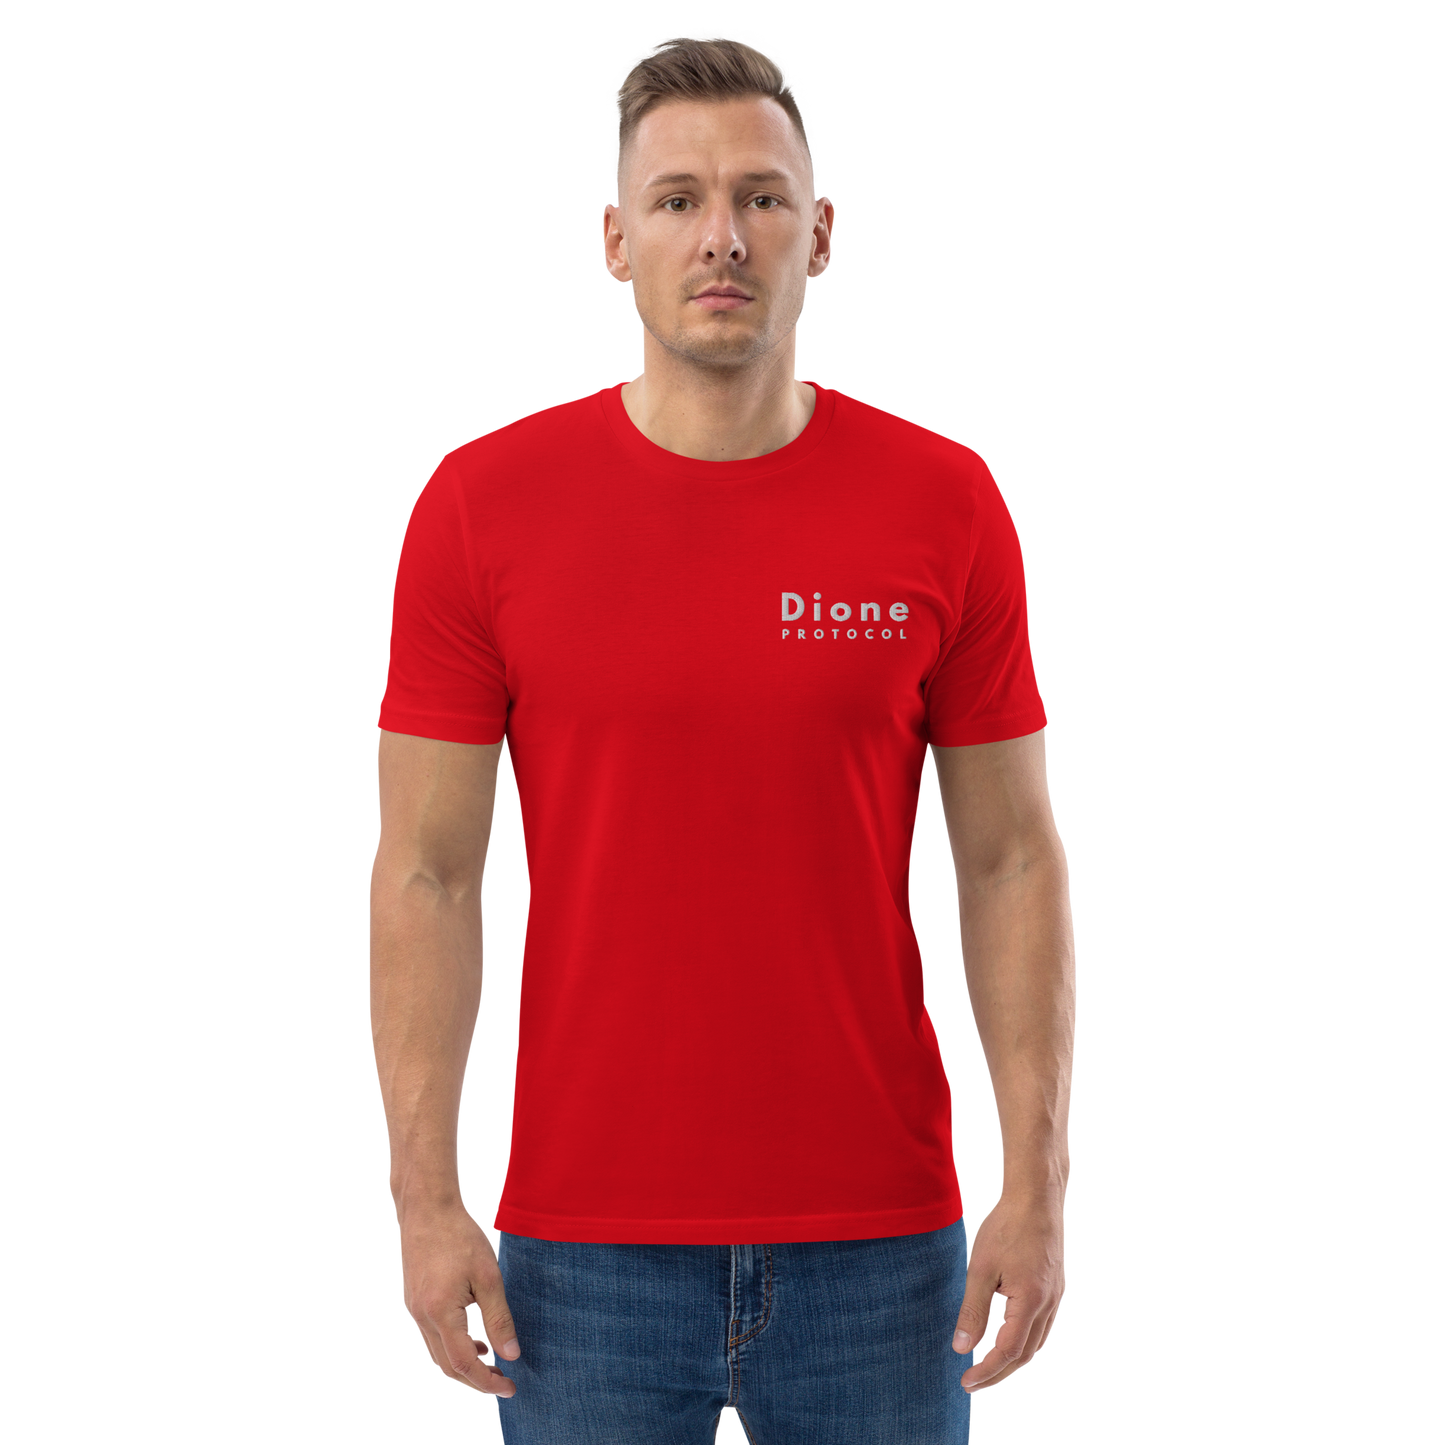 Maglietta - Dione V1.0 - Rossa - Premium